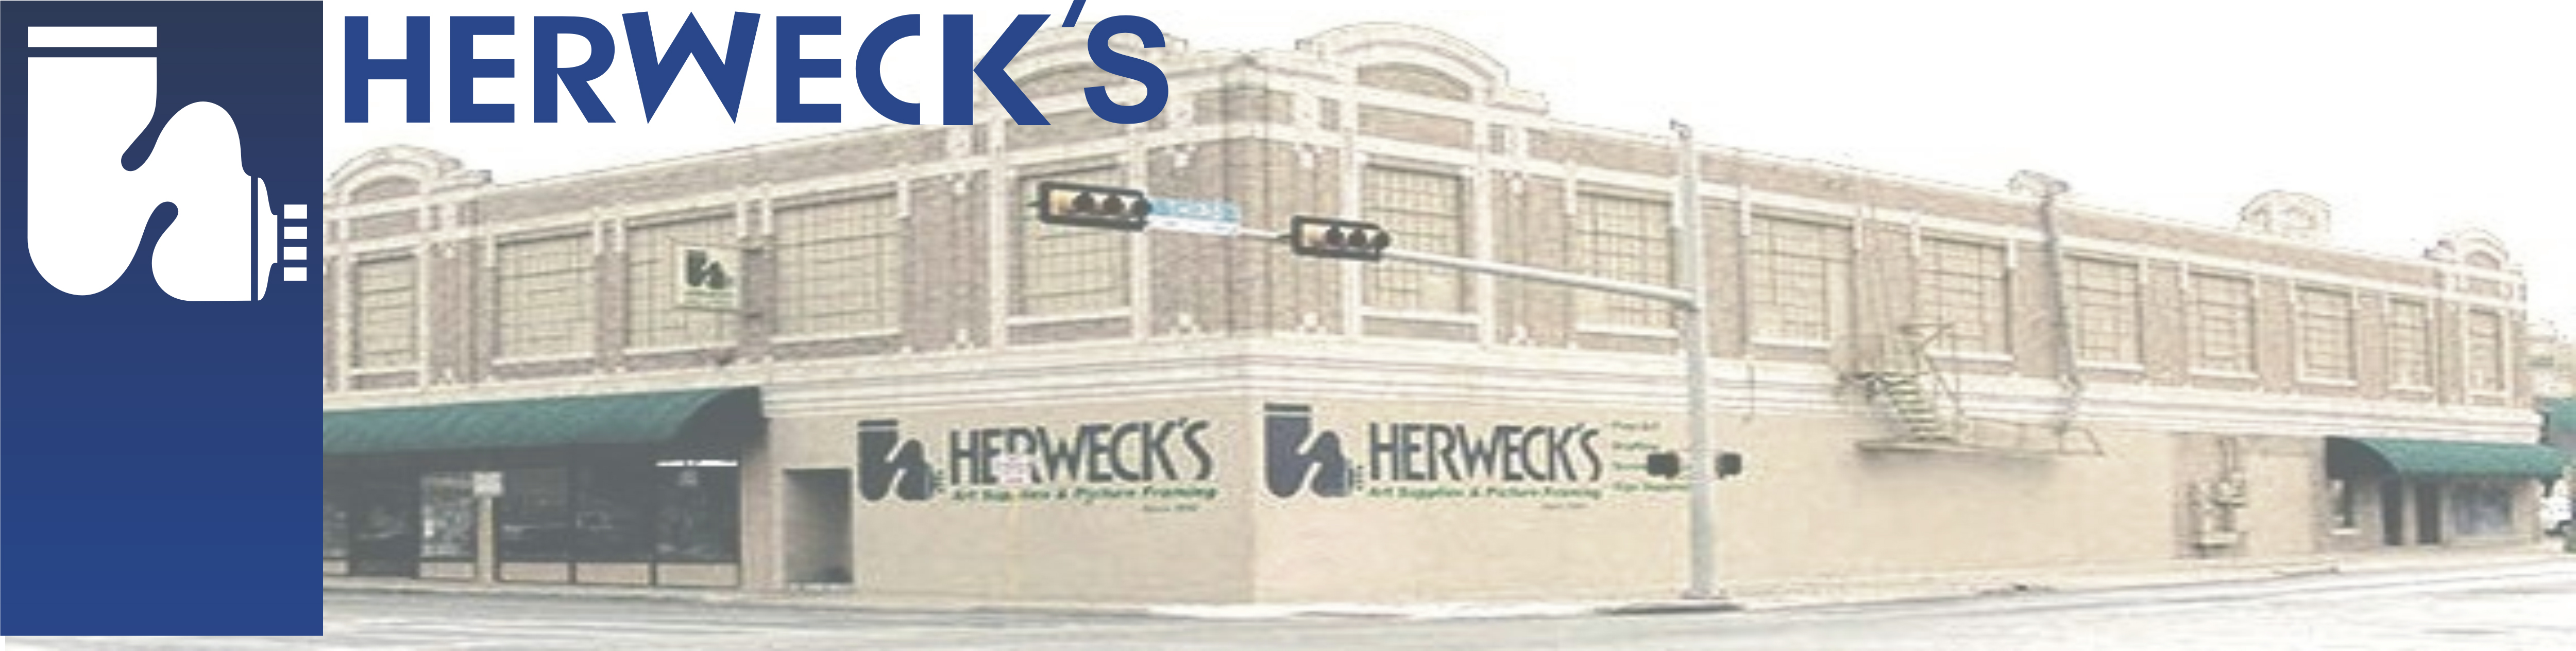 Herwecks